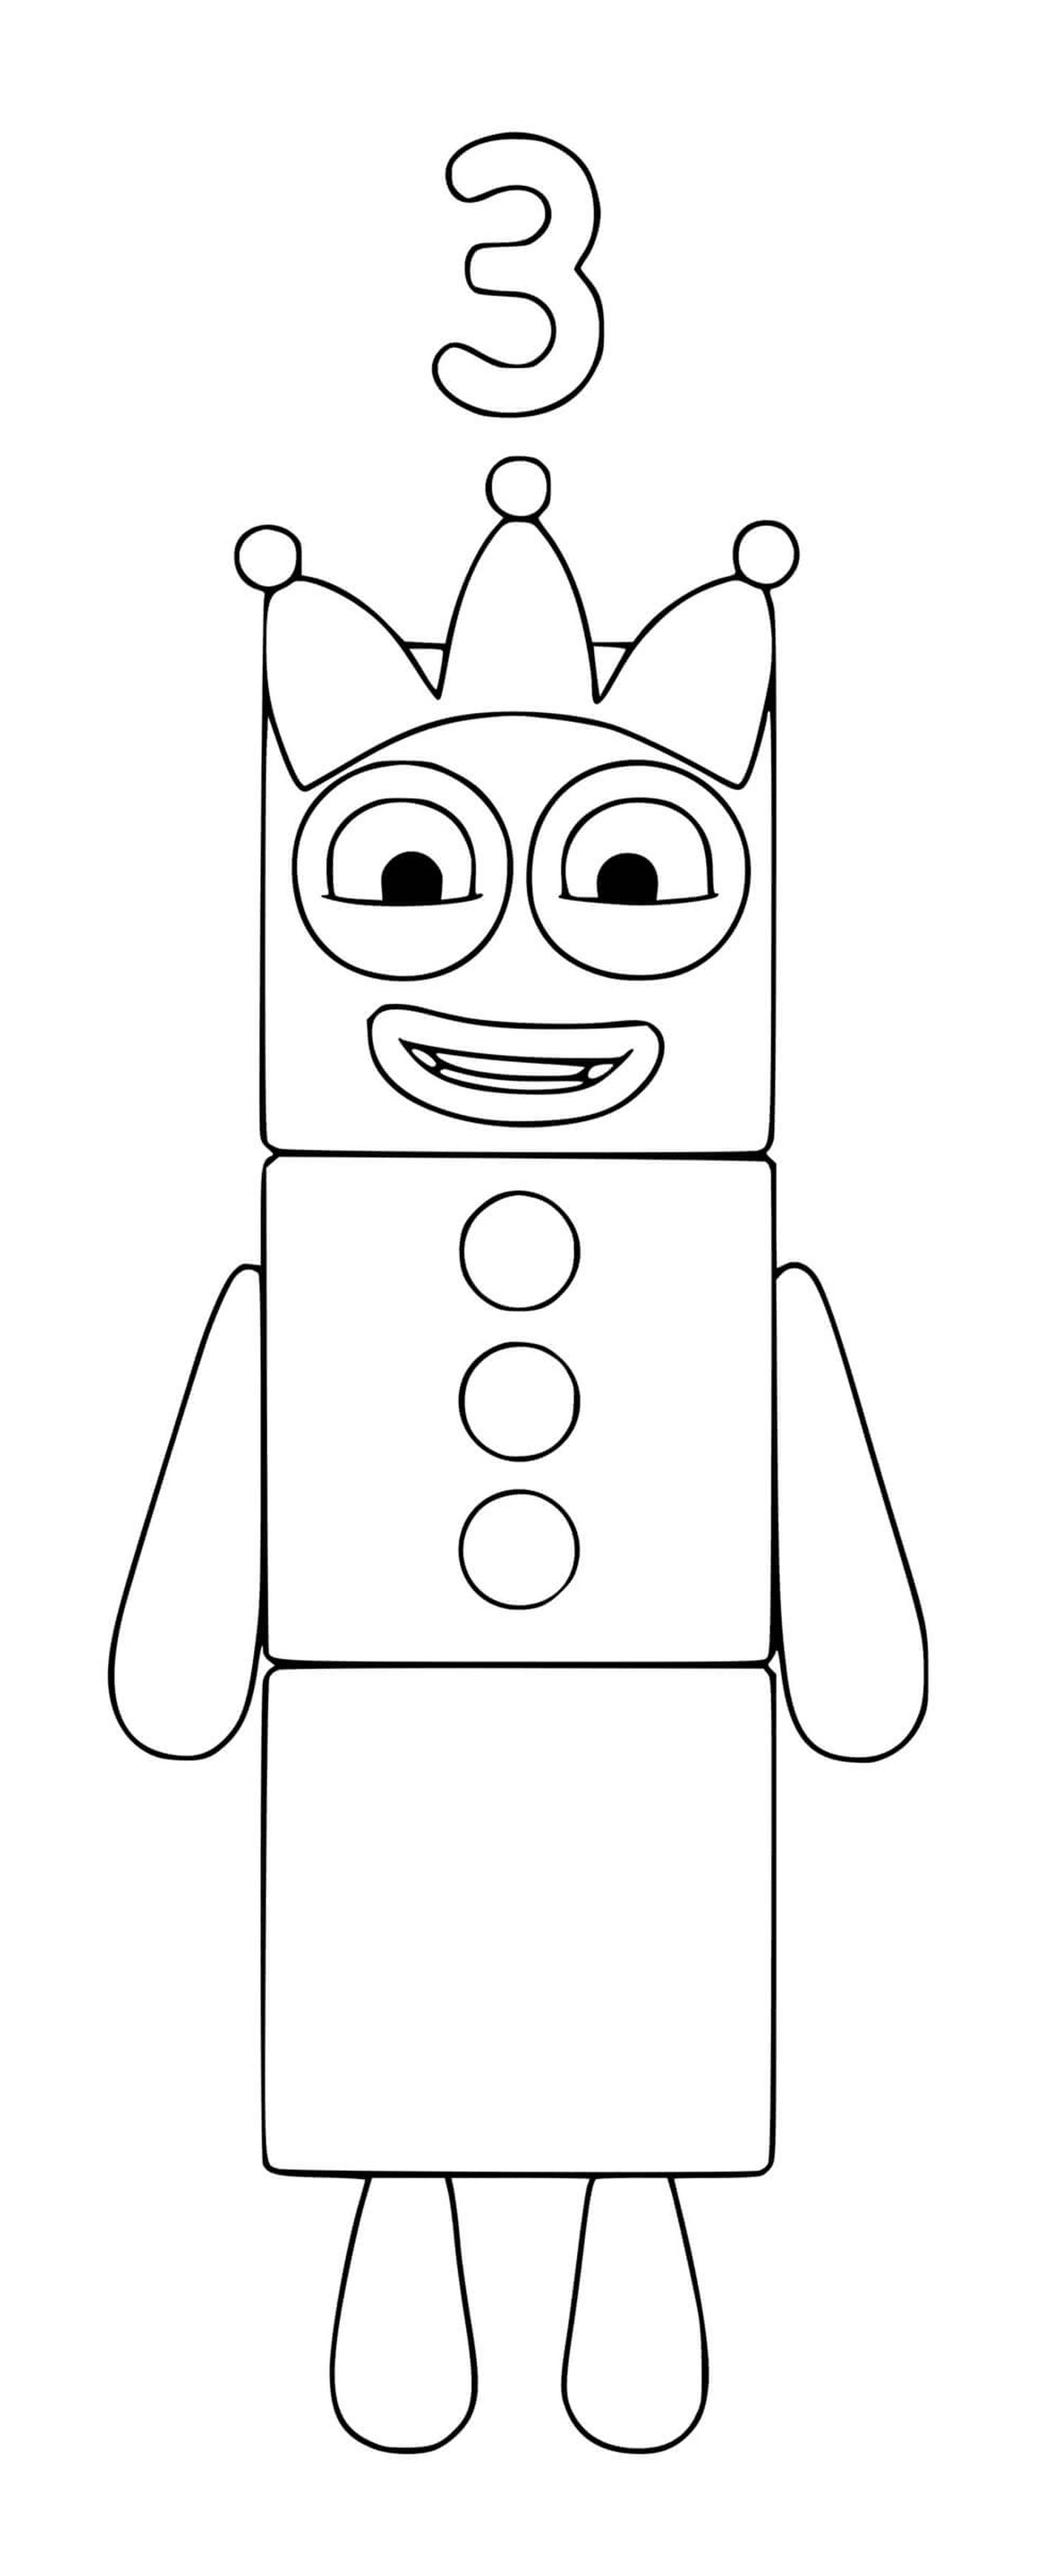  Numero di blocchi numero 3, un robot giocattolo 